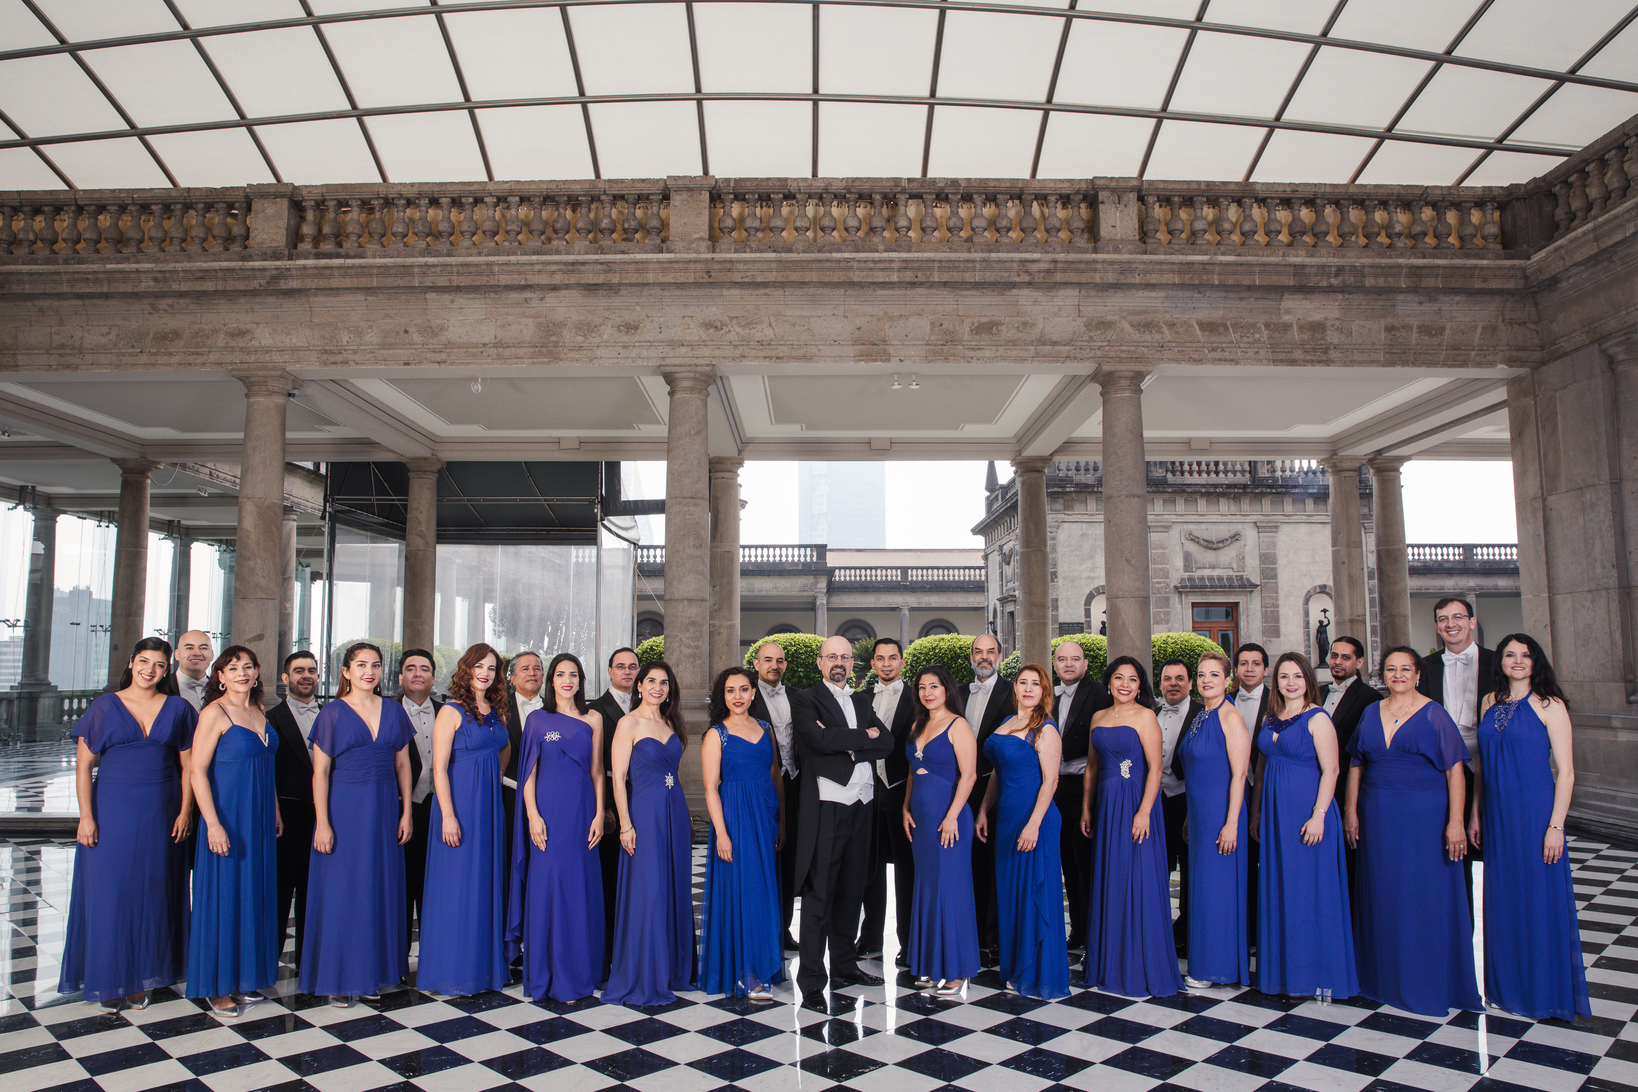 El Coro de Madrigalistas de Bellas Artes interpretará música sacra del siglo XX y tangos argentinos en León